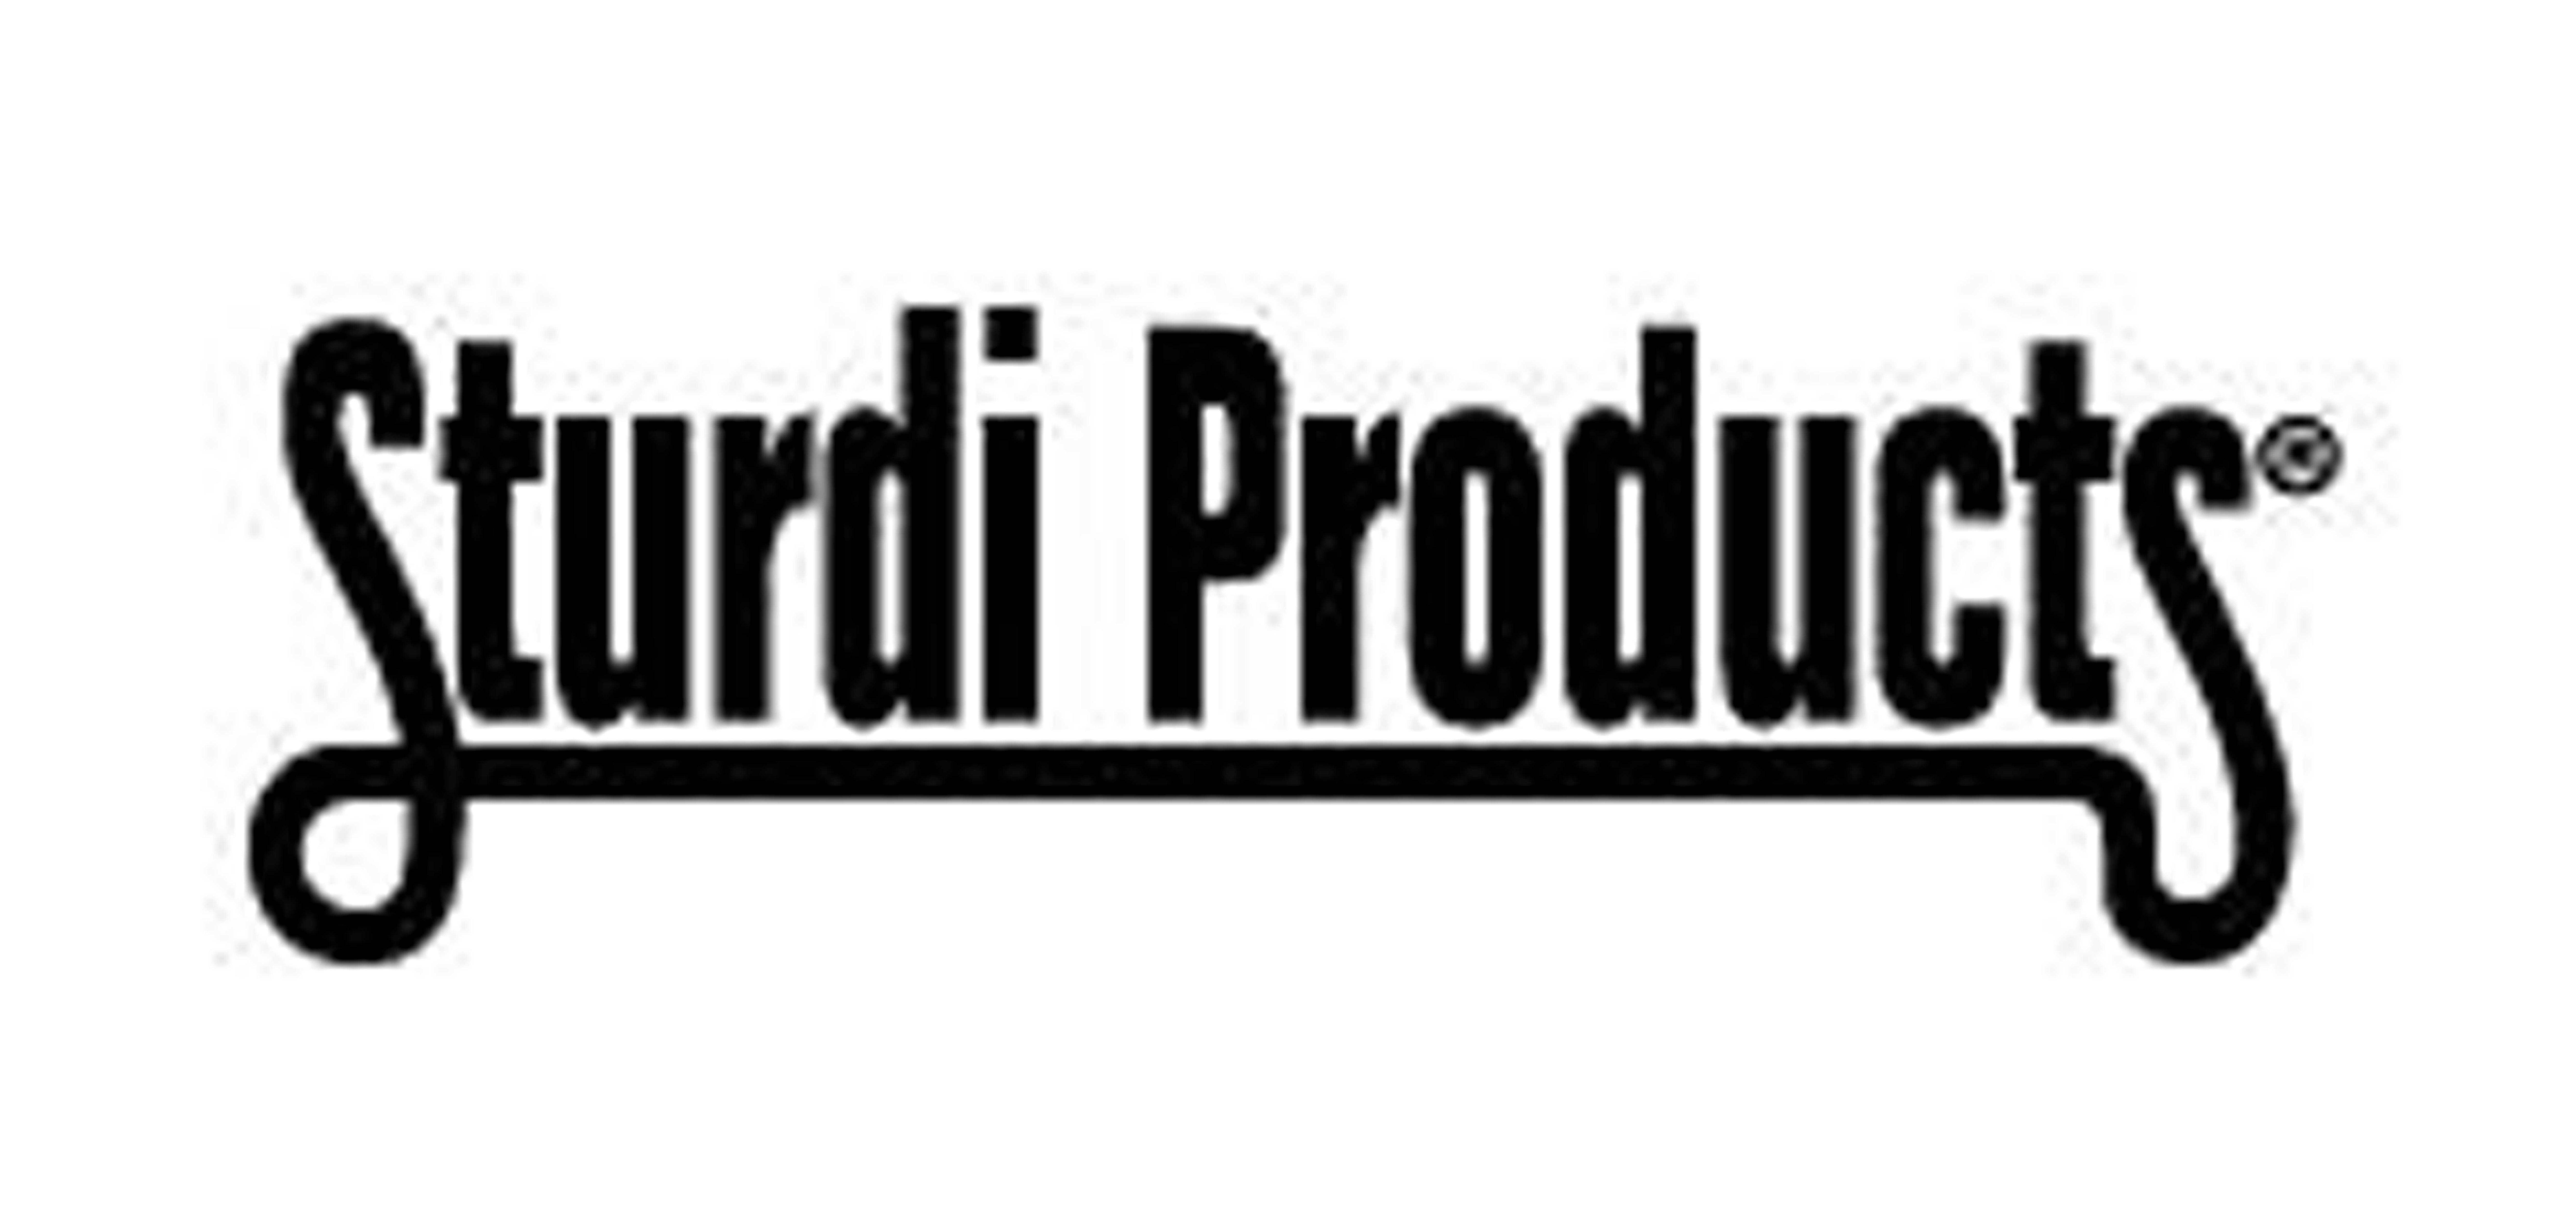 Sturdi products是什么牌子_Sturdi products品牌怎么样?